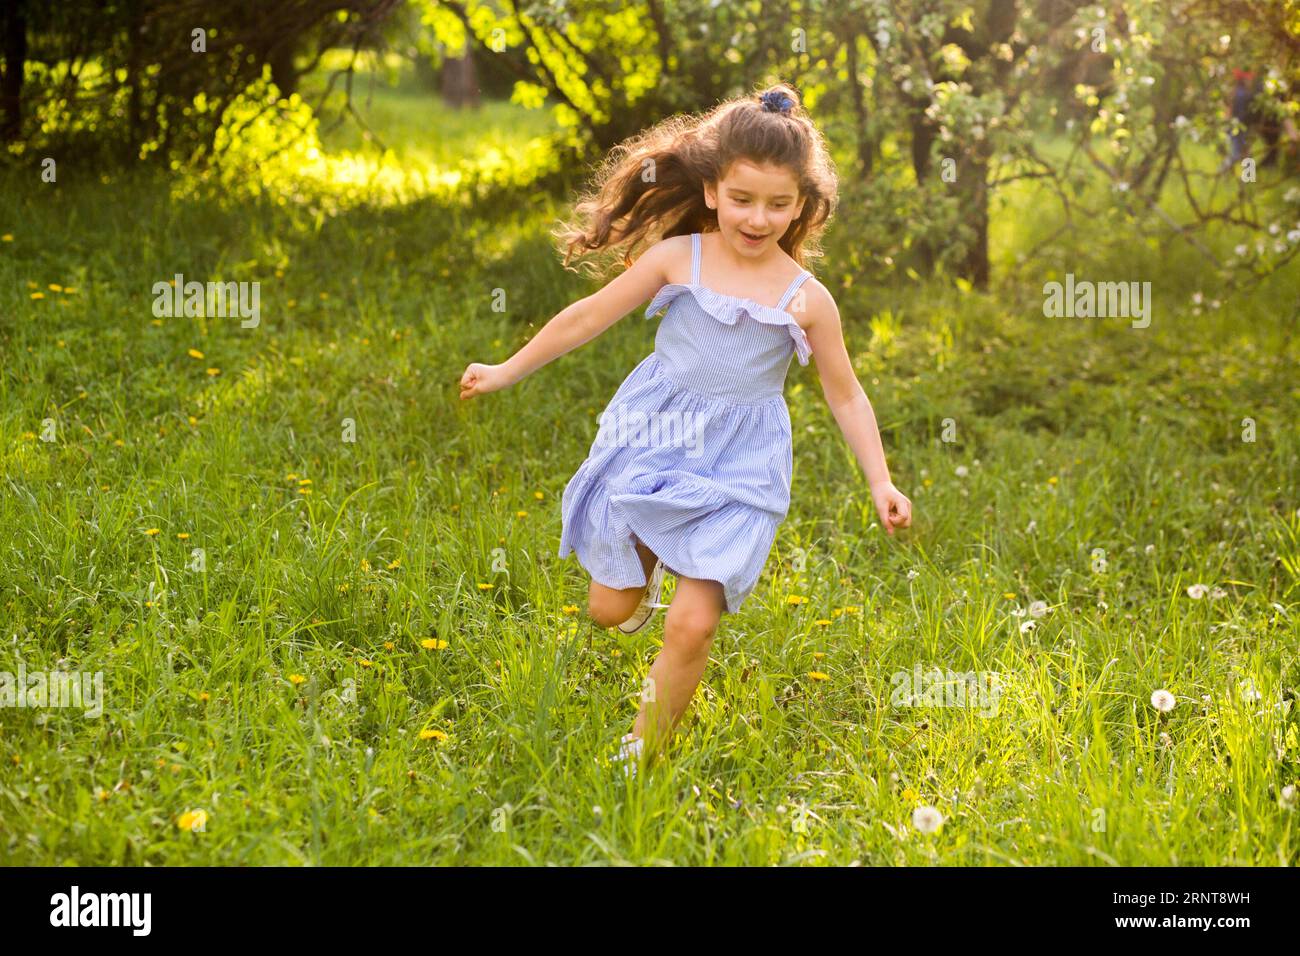 Cute little girl running garden Stock Photo